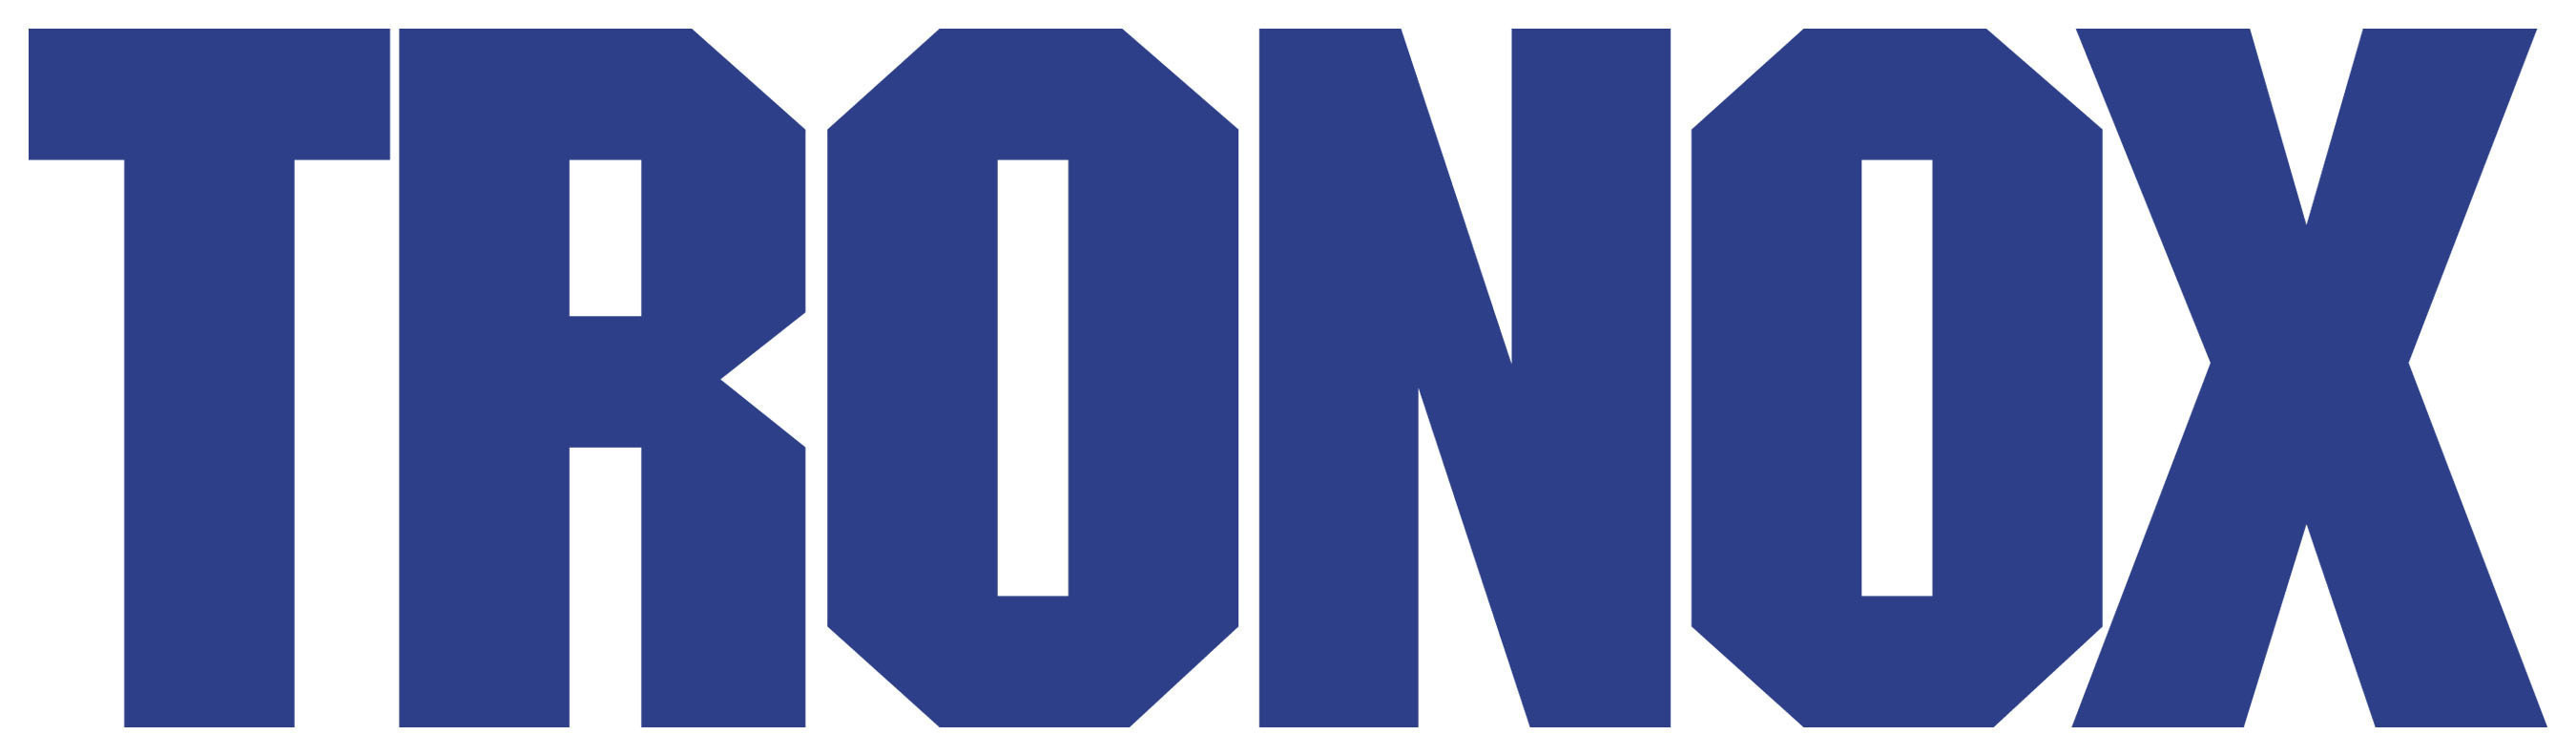 Tronox Incorporated logo. (PRNewsFoto/Tronox Incorporated) (PRNewsFoto/)